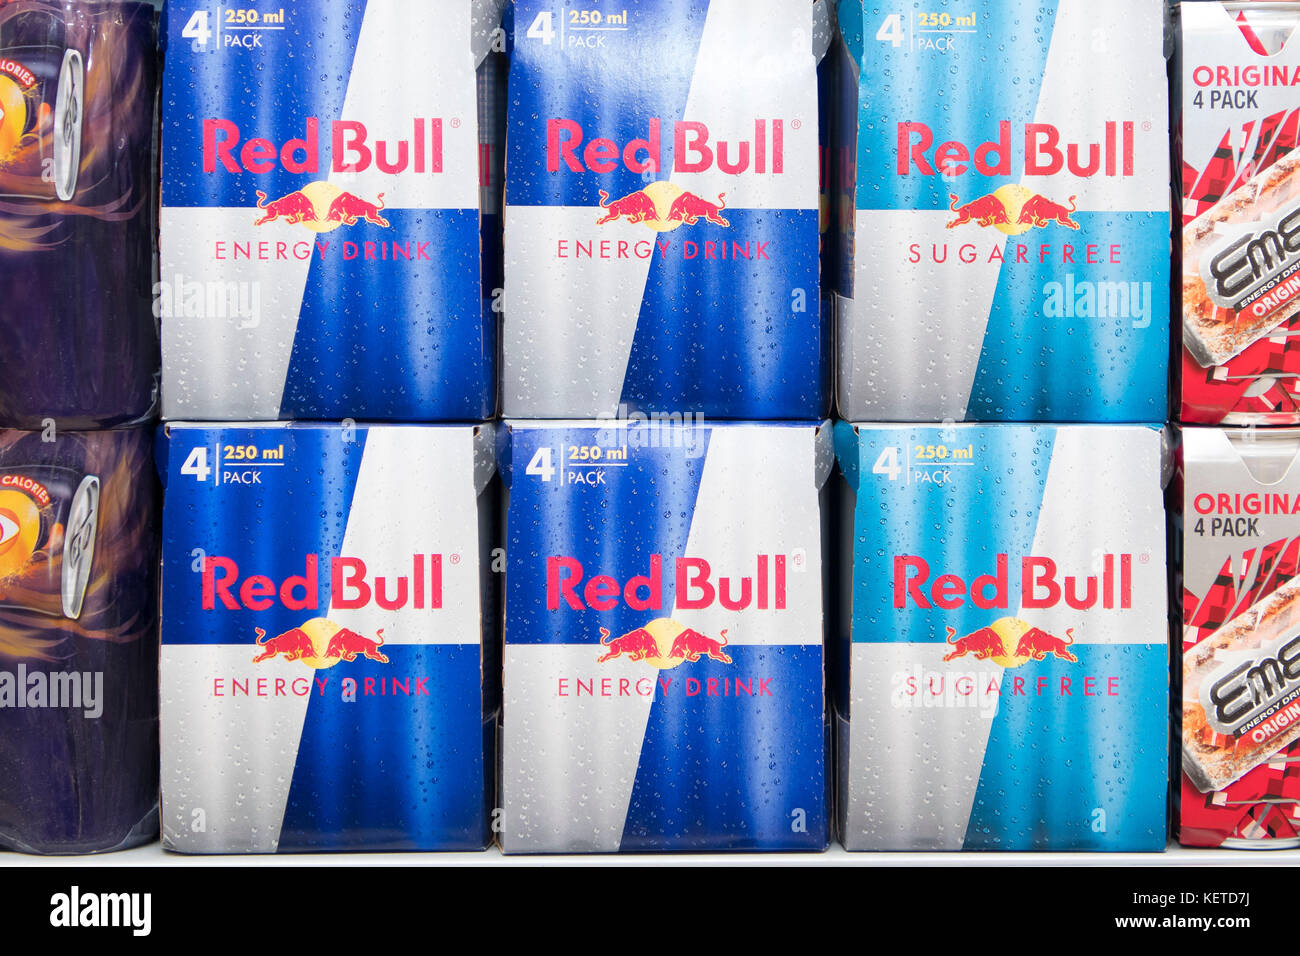 Dosen von der energy drink Red Bull auf Anzeige auf einen Supermarkt Regal. Stockfoto